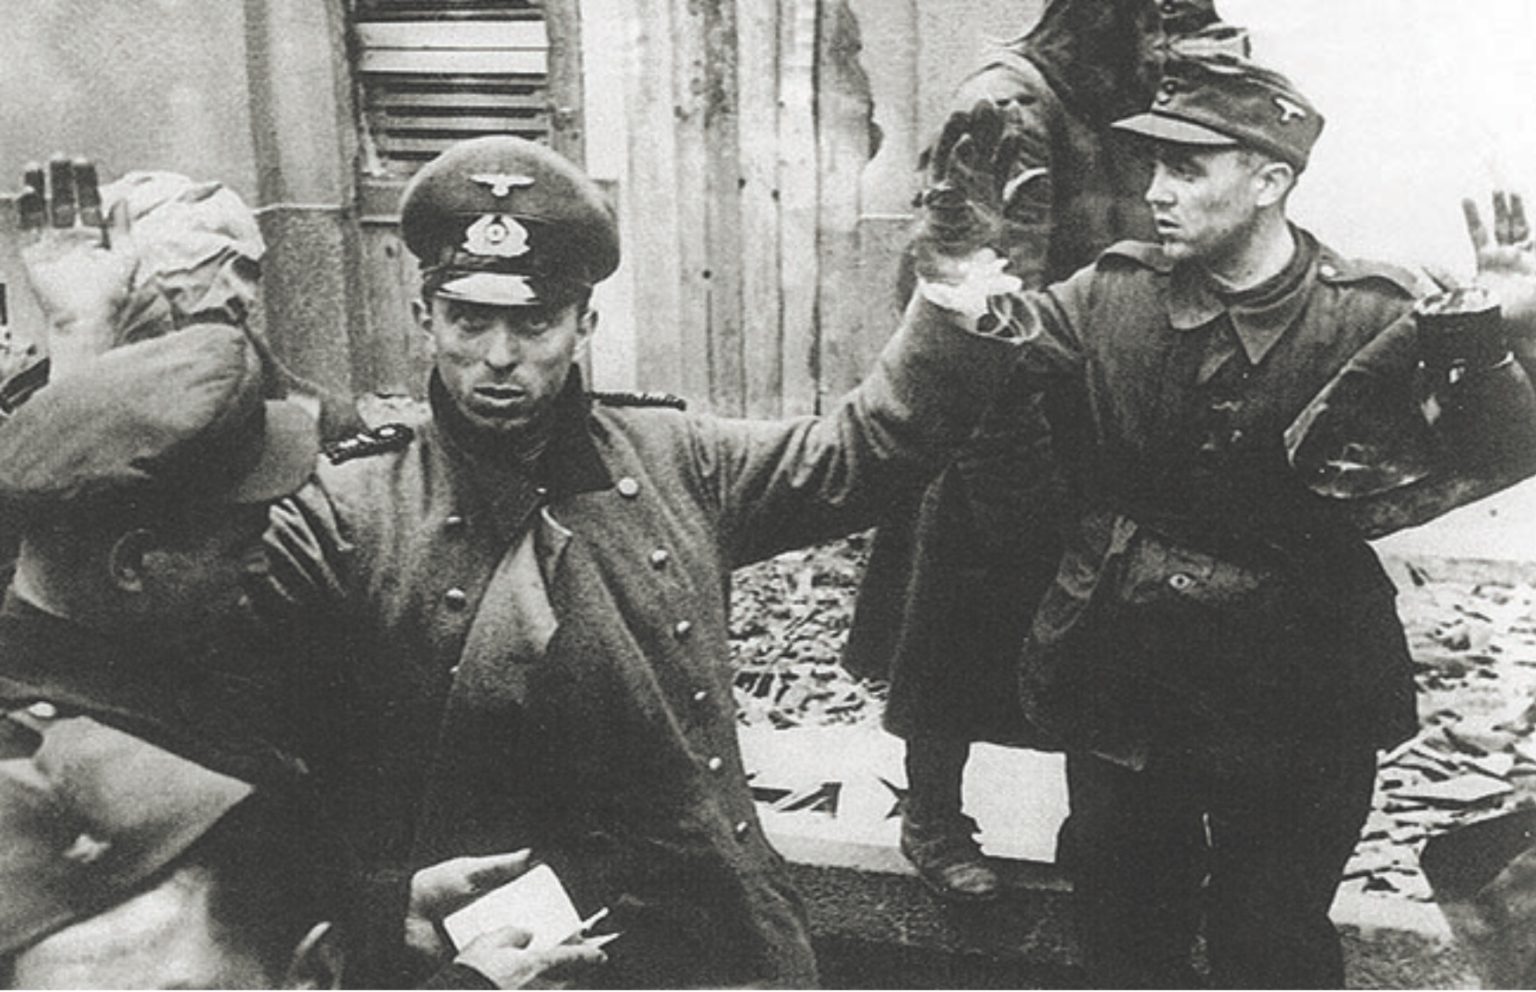 Рота сдалась в плен. Немецкие солдаты сдаются в плен 1945. Берлин 1945 немцы сдаются в плен. Дивизия Нордланд Берлин 1945. Немецкие солдаты сдаются в плен в Берлине.